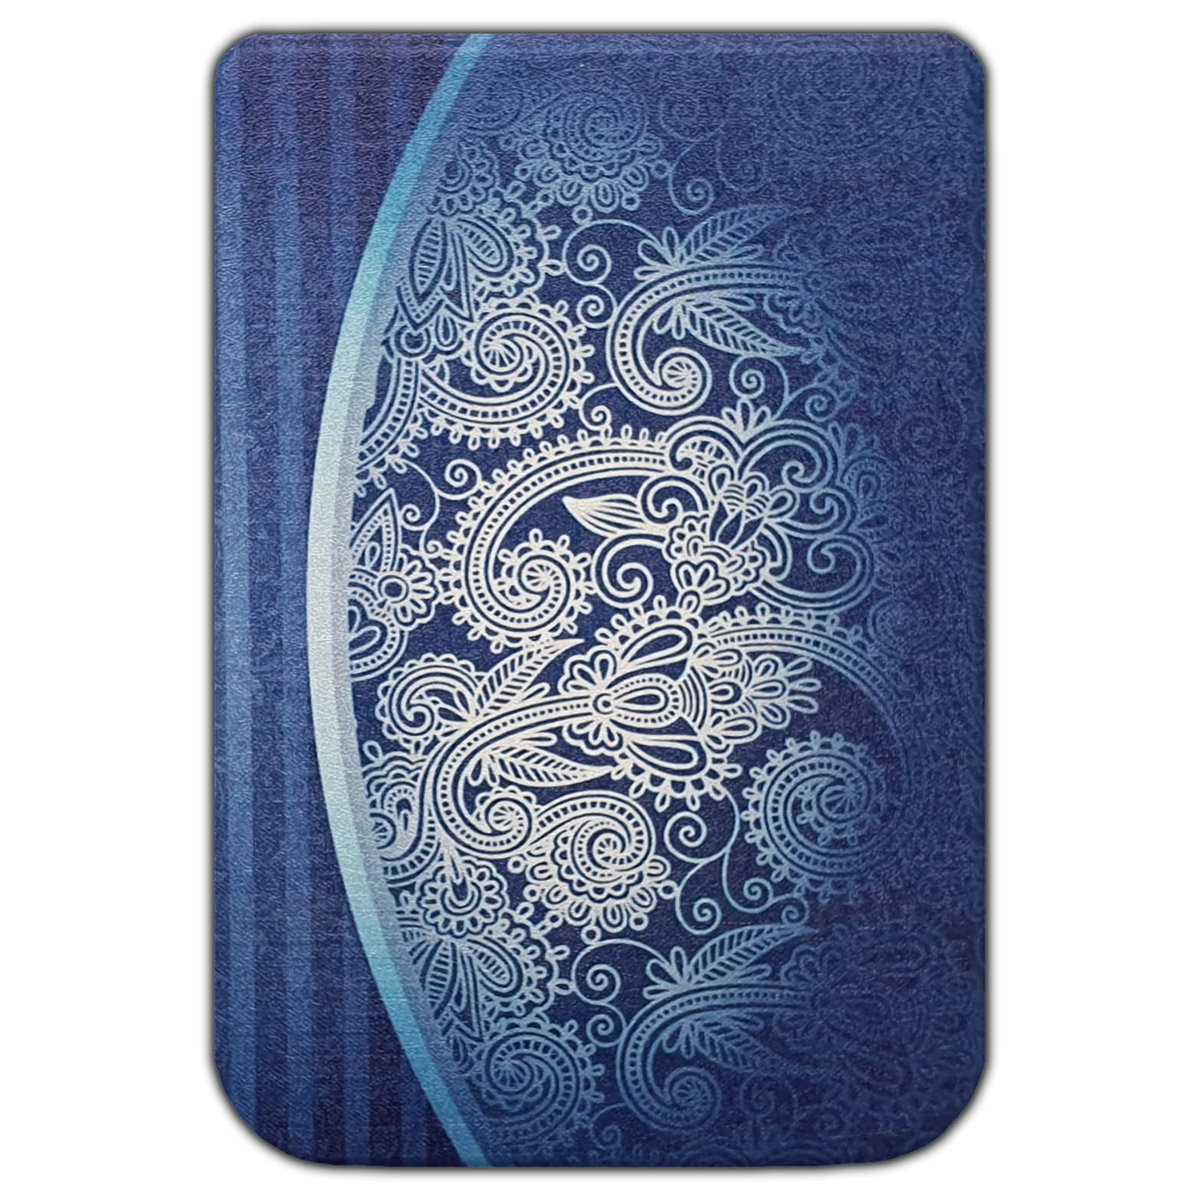 Фото - Чохол для ел. книги PocketBook Smartcase Obudowa Etui -  Color / Touch Hd 3 / Lux 4 / Lux 5 